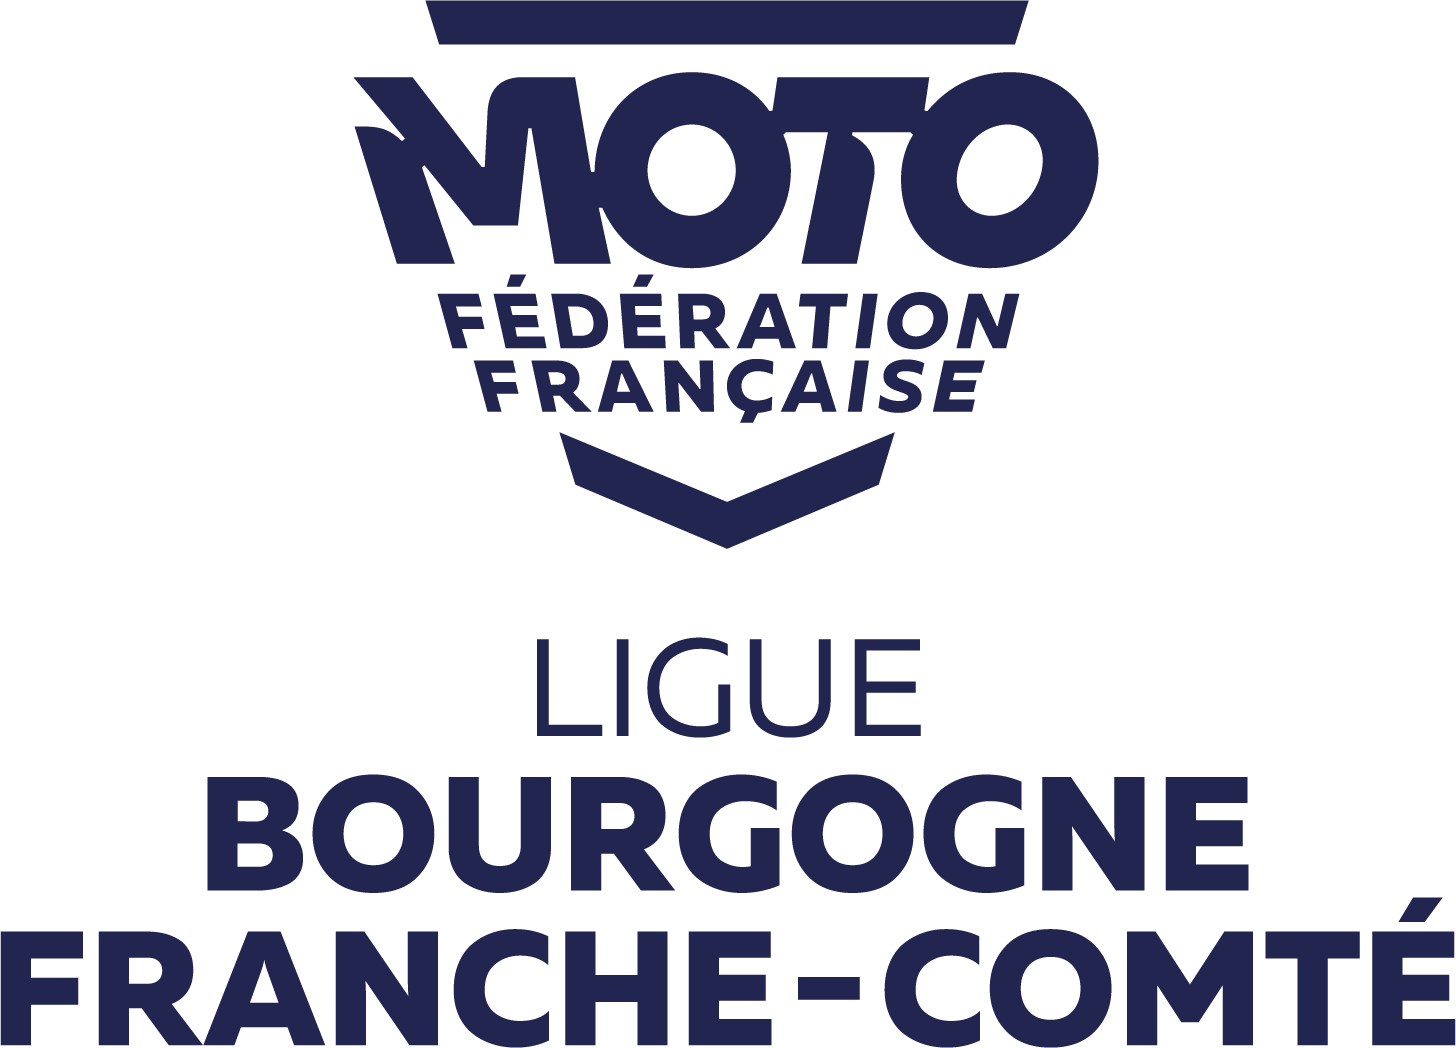 Ligue Motocyclisme Bourgogne Franche-ComtÃ©